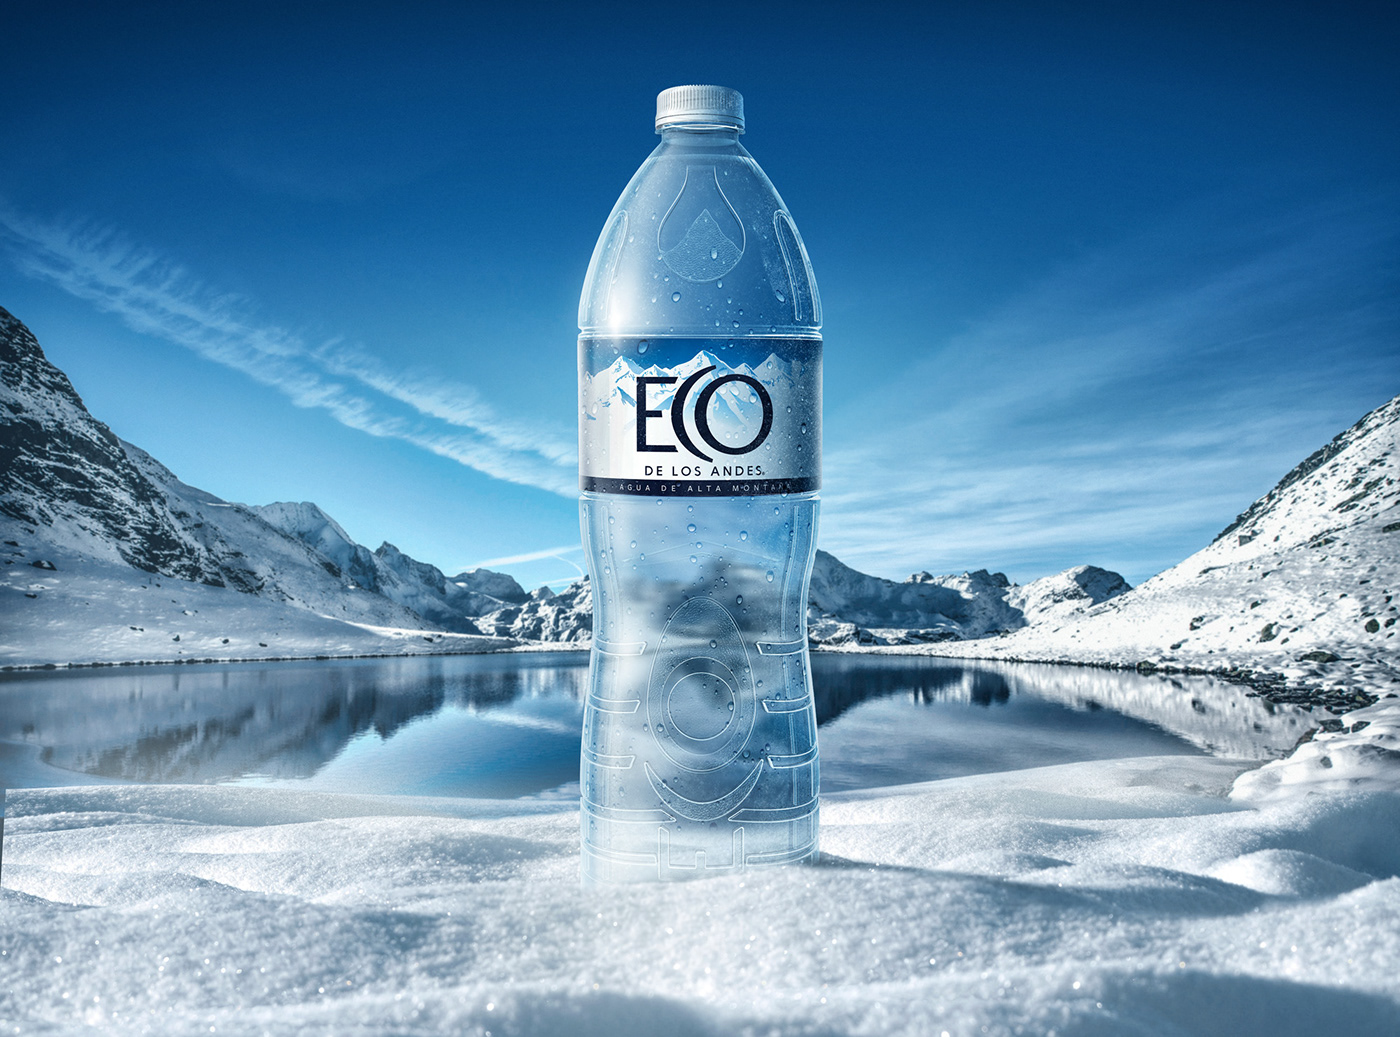 agua argentina Cordillera ECO de los Andes nestle nestle waters retoque digital retoque fotográfico water botella